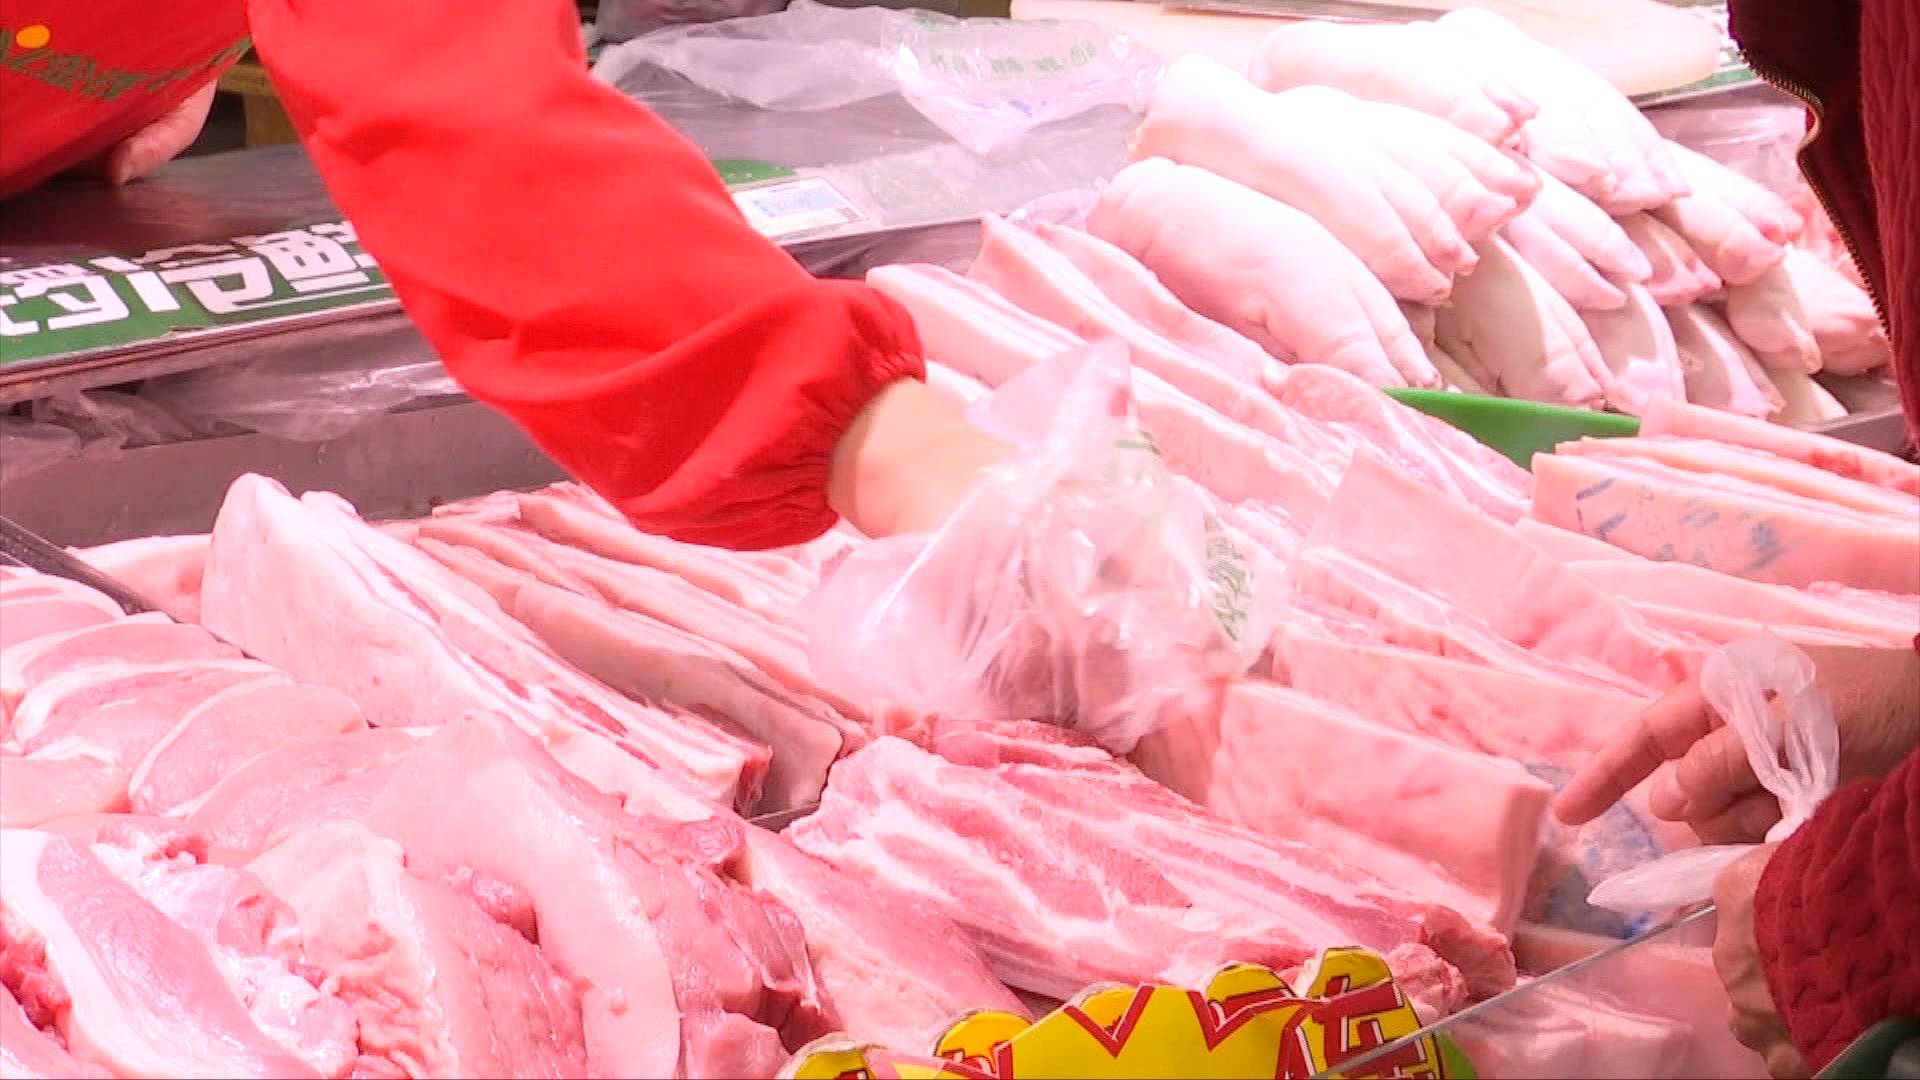 涉案价值20万元 济南三小偷潜入冷酷盗窃猪肉被抓获